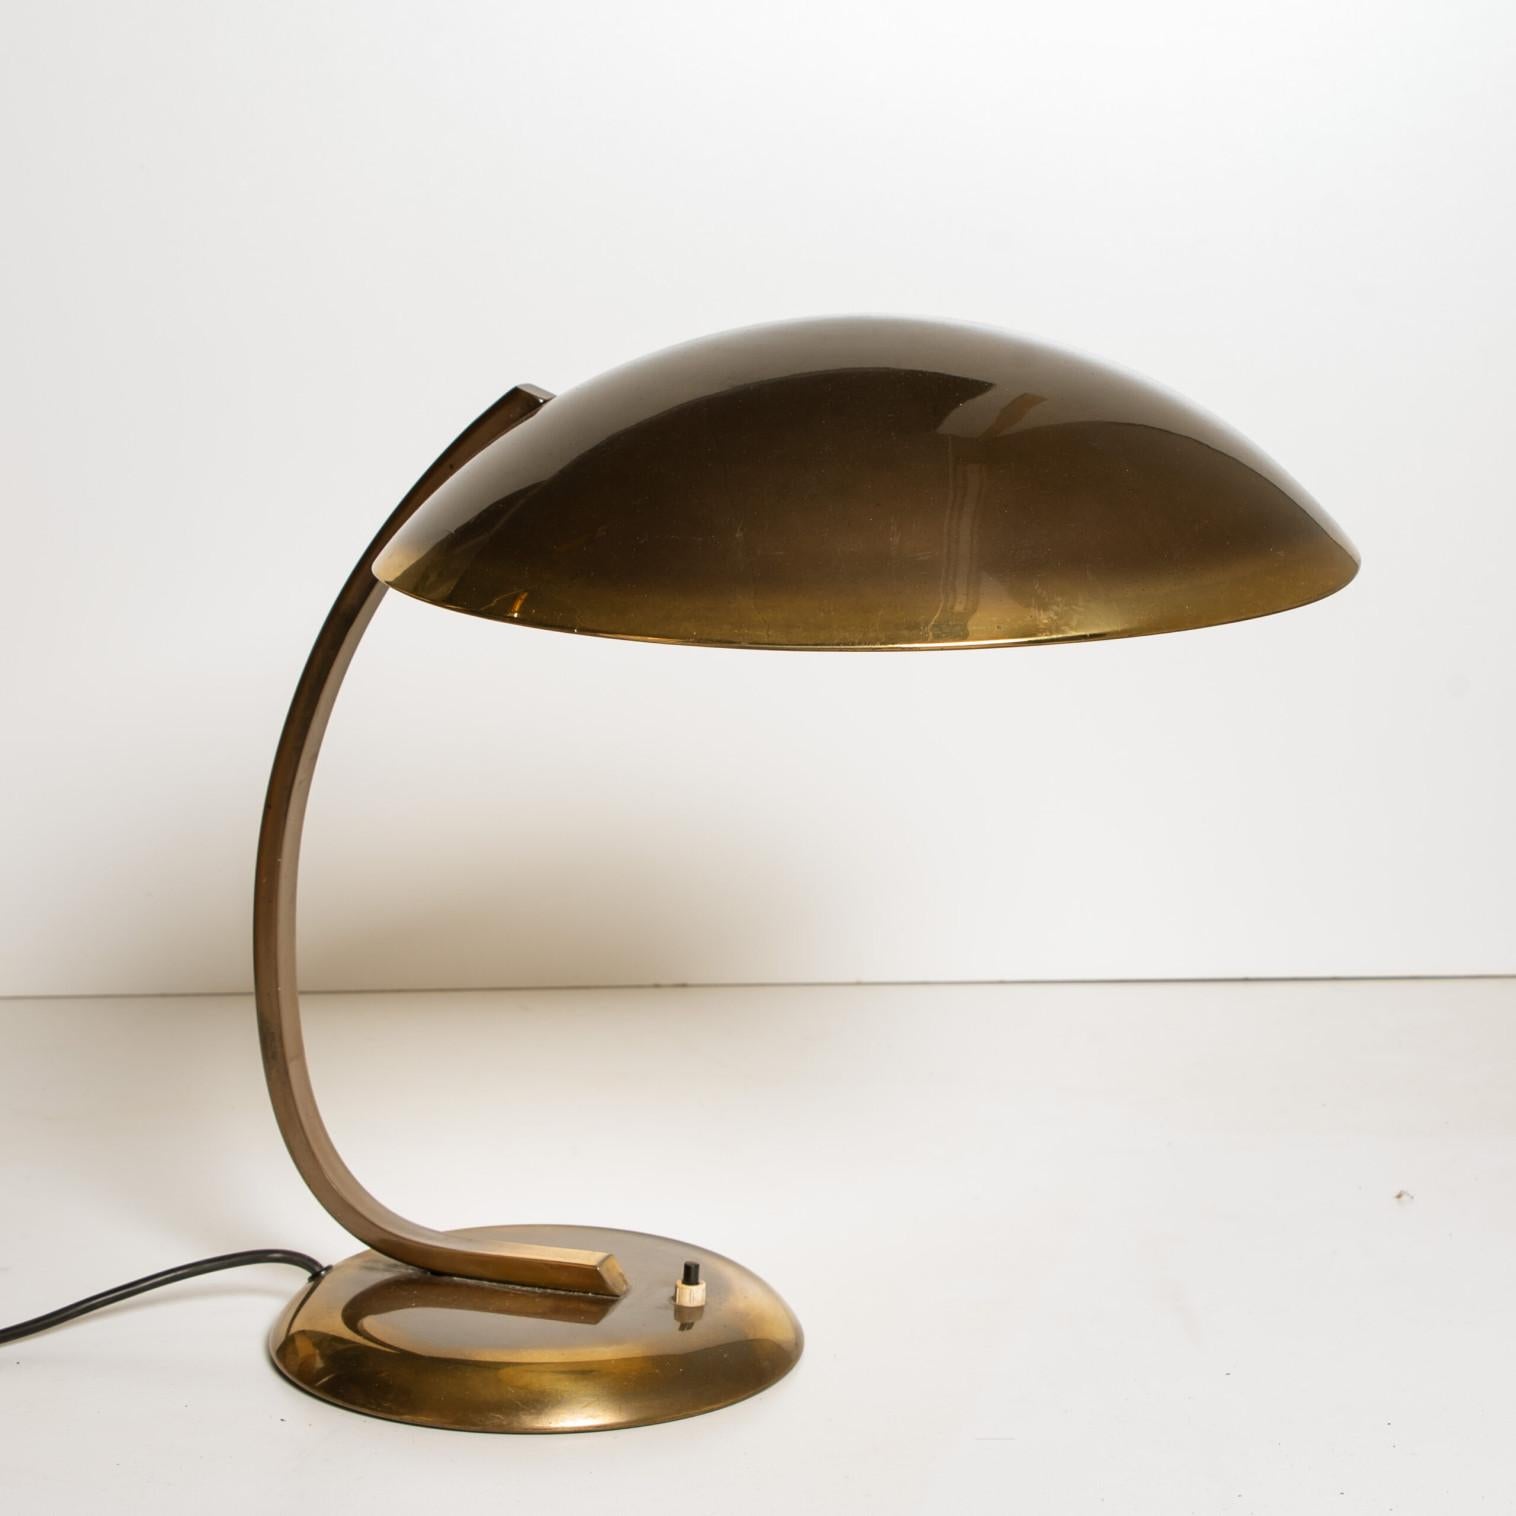 Christian Dell for Kaiser Idell / Kaiser Leuchten Brass Desk or Table Lamp, Art  For Sale 4